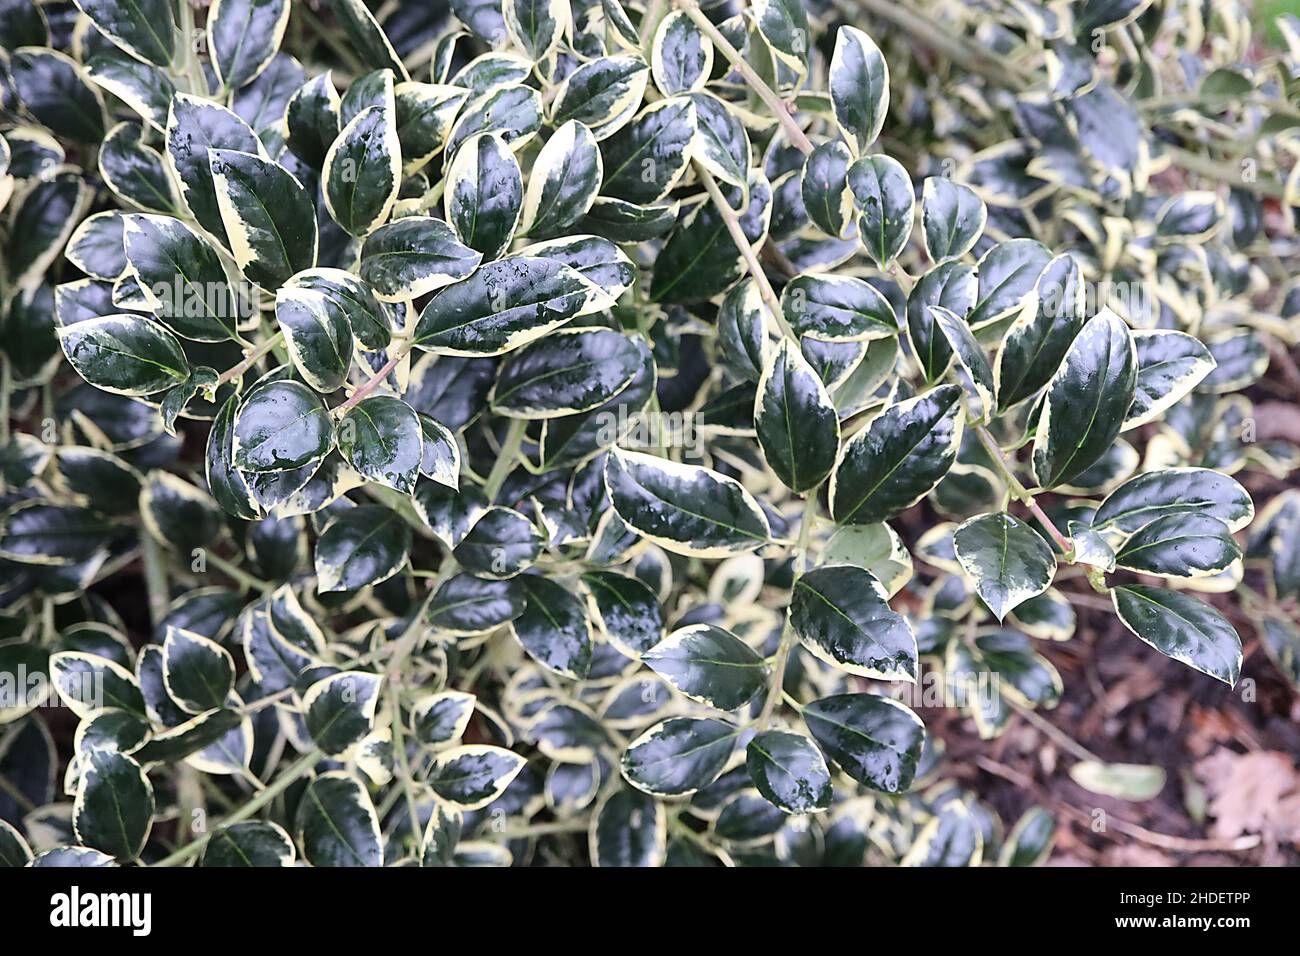 Ilex aquifolium “Silver Van Tol” Holly Silver Van Tol – hojas verdes oscuras curvadas con márgenes crema pálidos, enero, Inglaterra, Reino Unido Foto de stock